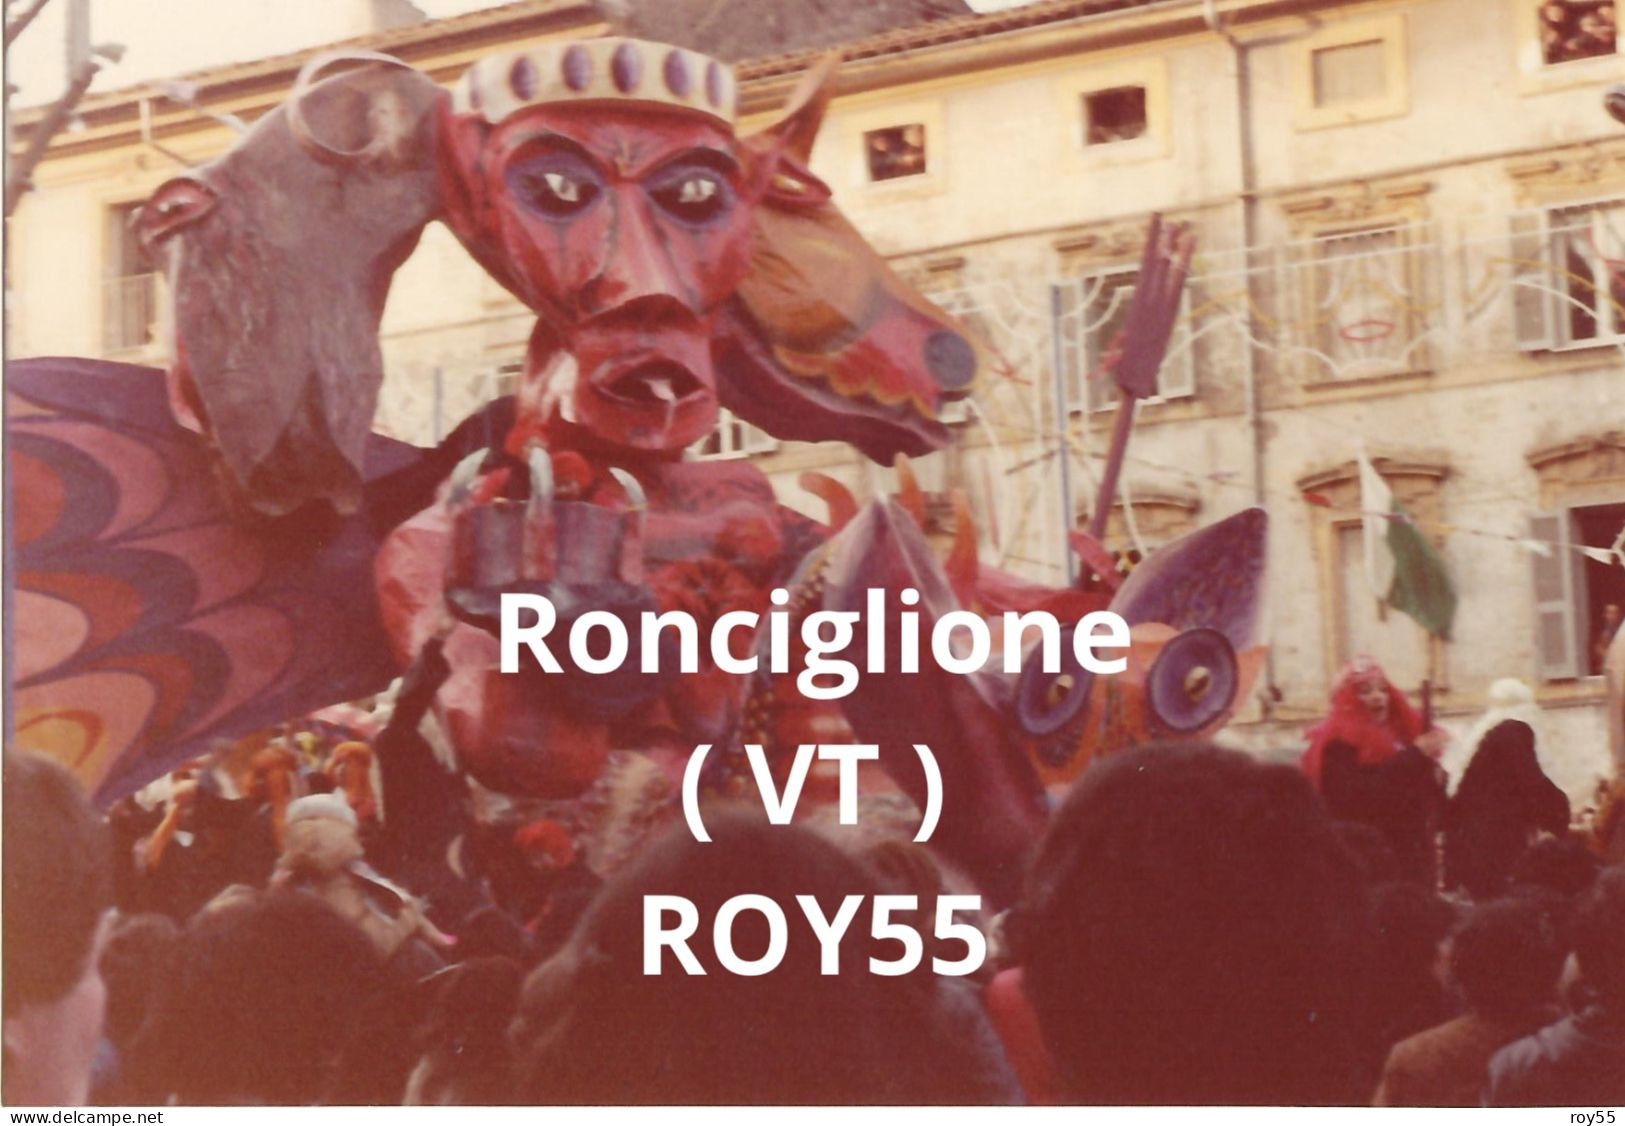 Lazio Viterbo Ronciglione Carnevale 1981 Carro Allegorico (fotografia) - Carnival